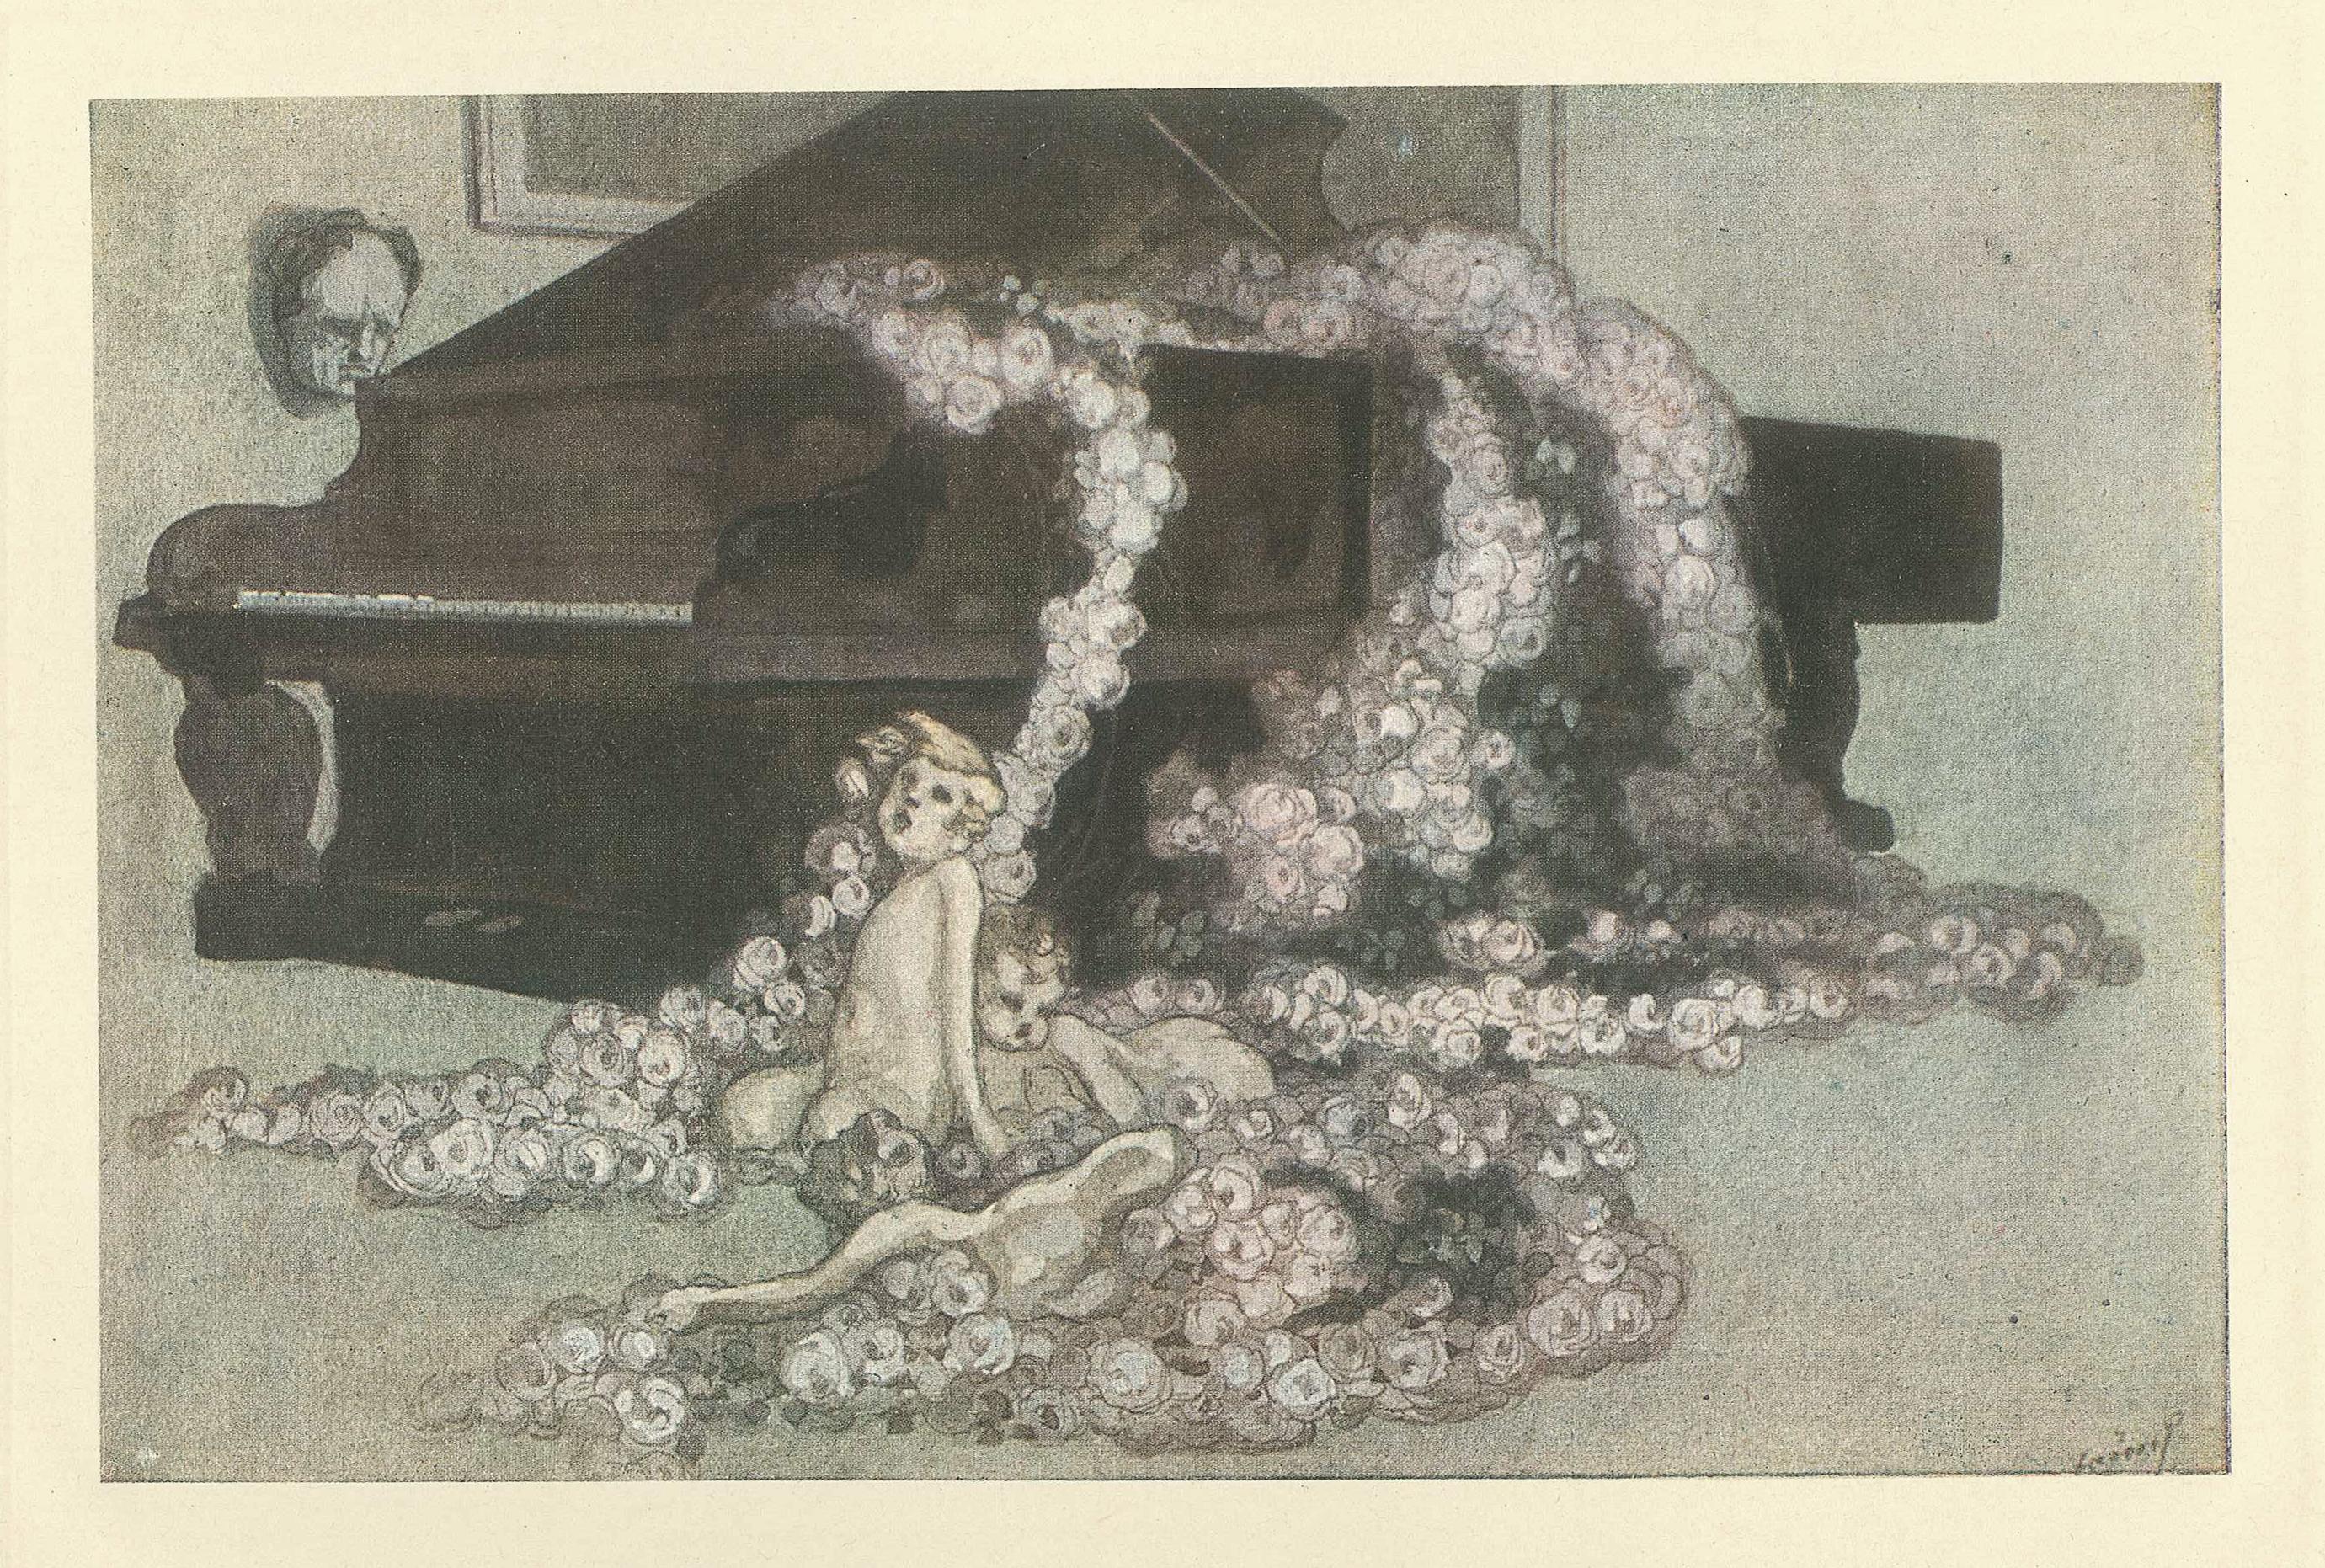 Rosenwalzer - Vintage-Hliogravur von Franz von Bayros - 1921 ca.